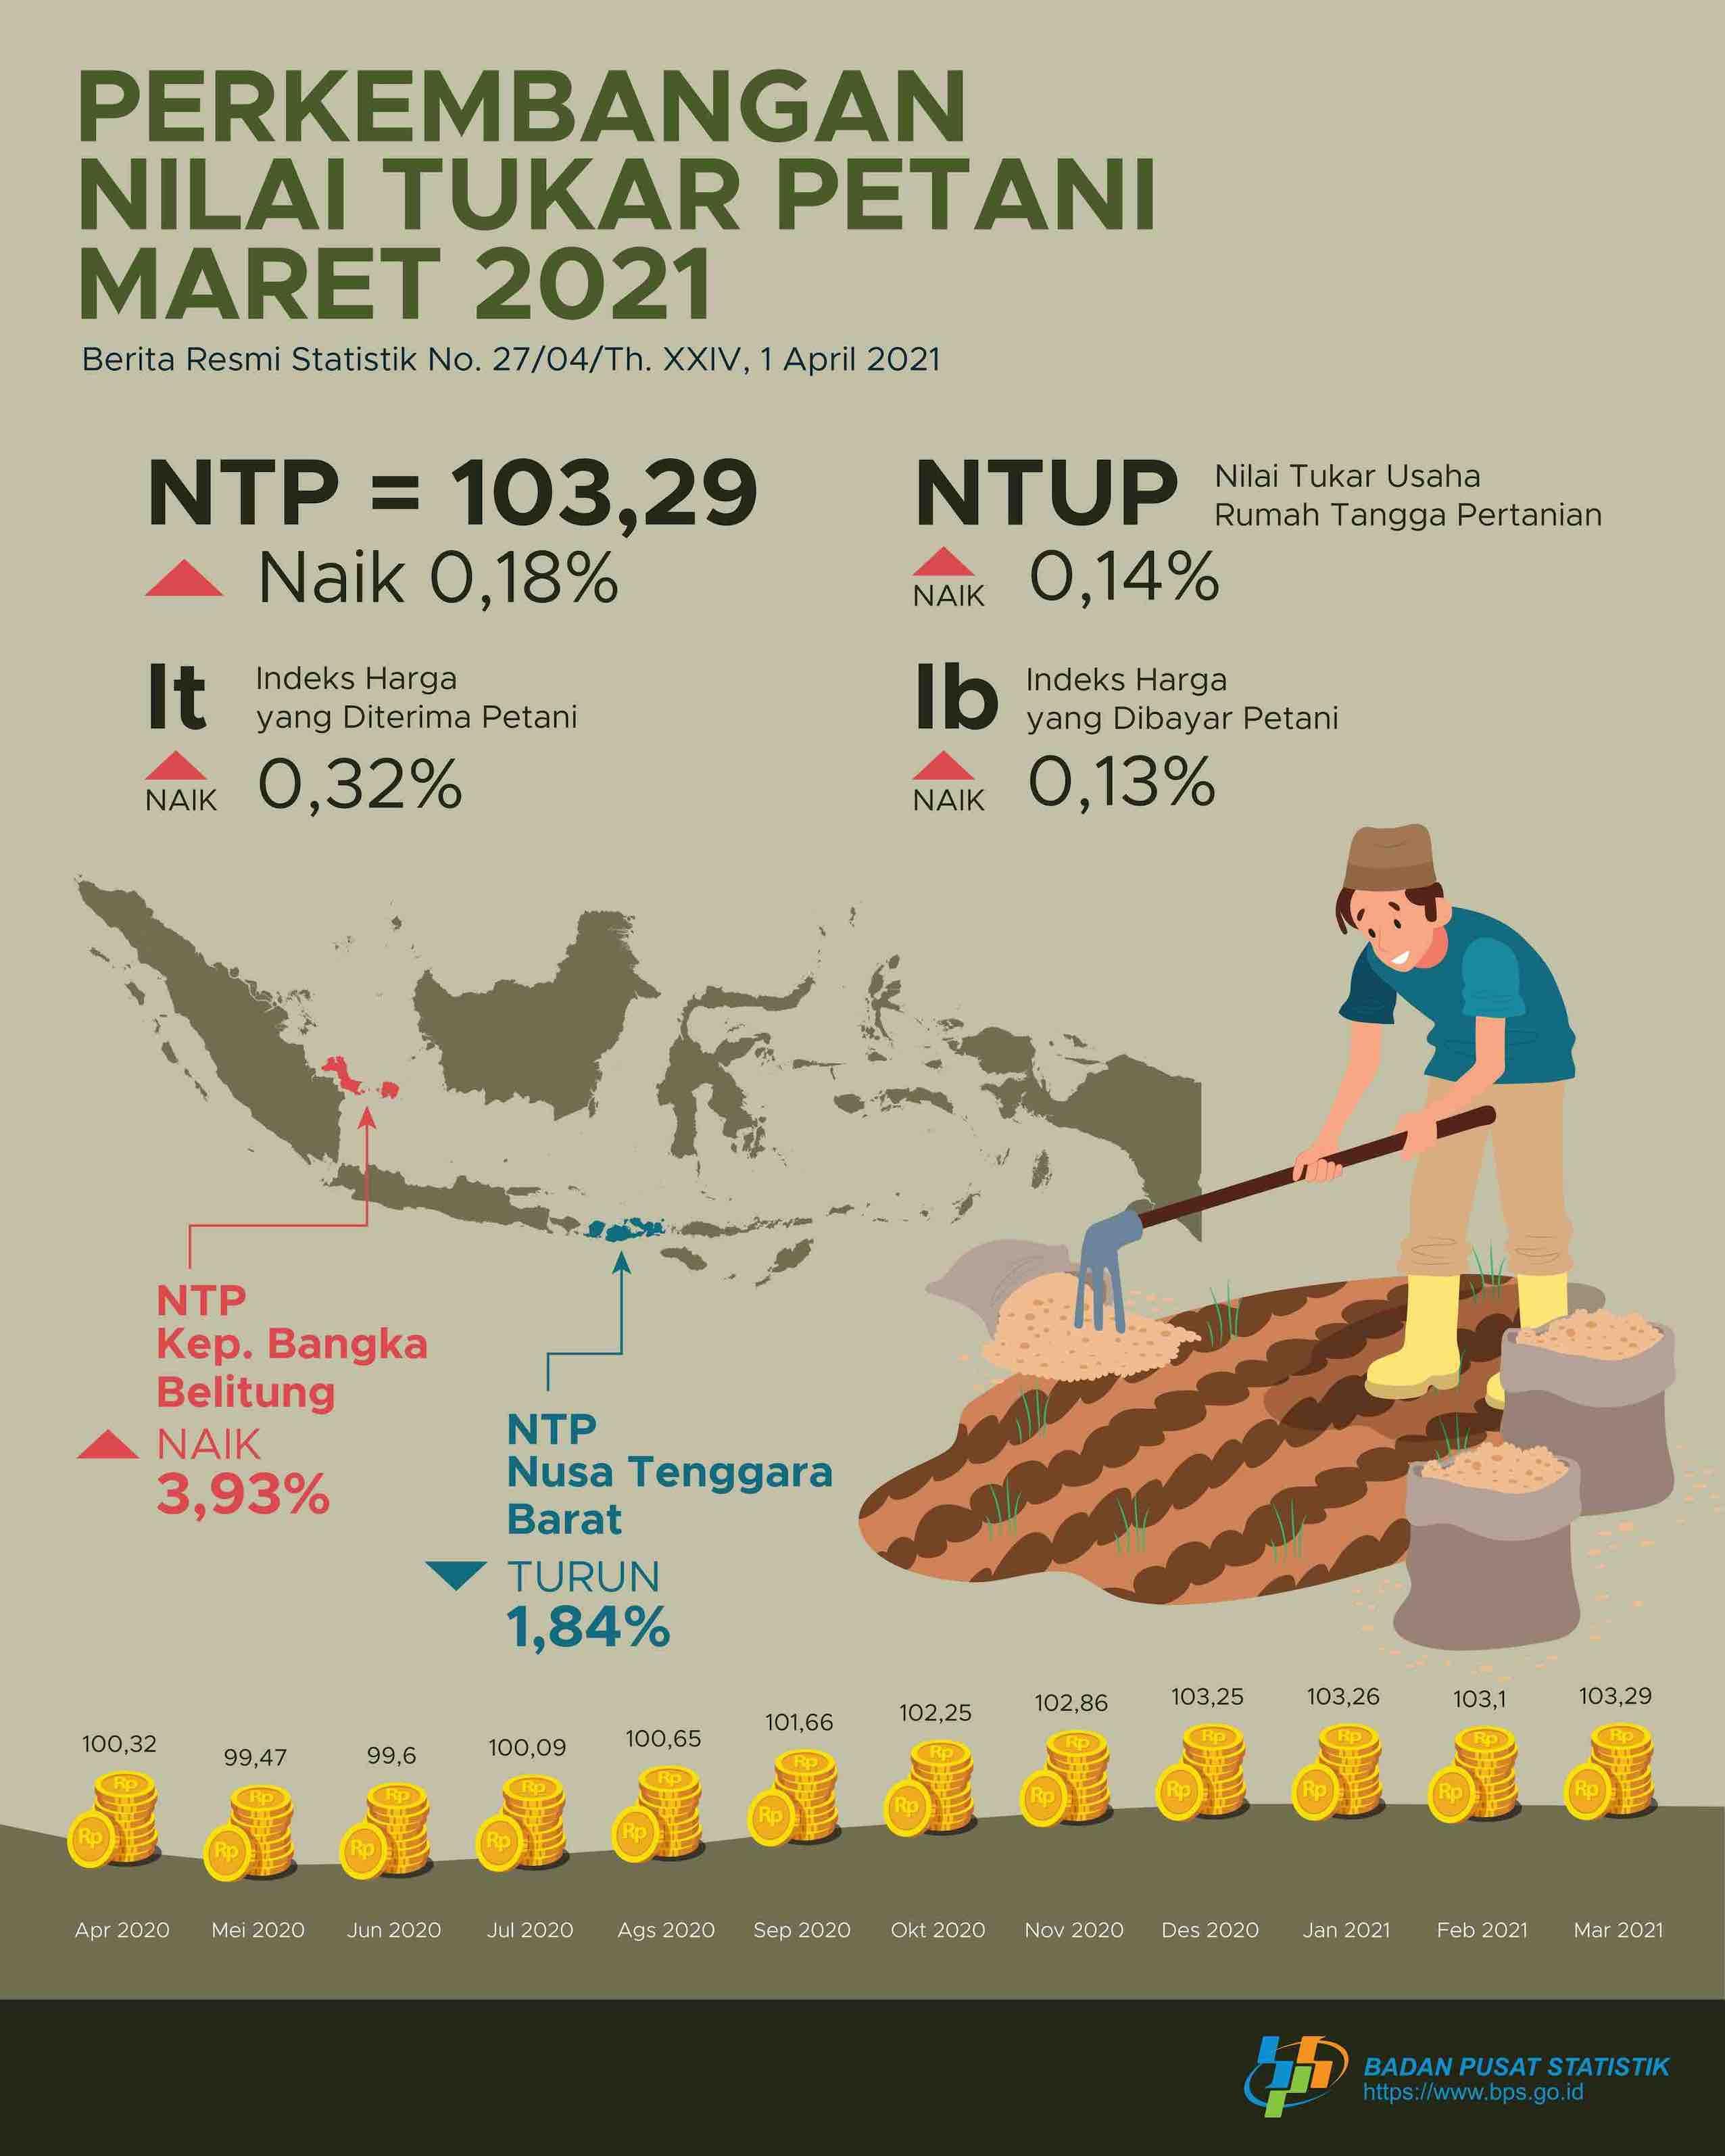 Nilai Tukar Petani (NTP) Maret 2021 sebesar 103,29 atau naik 0,18 persen